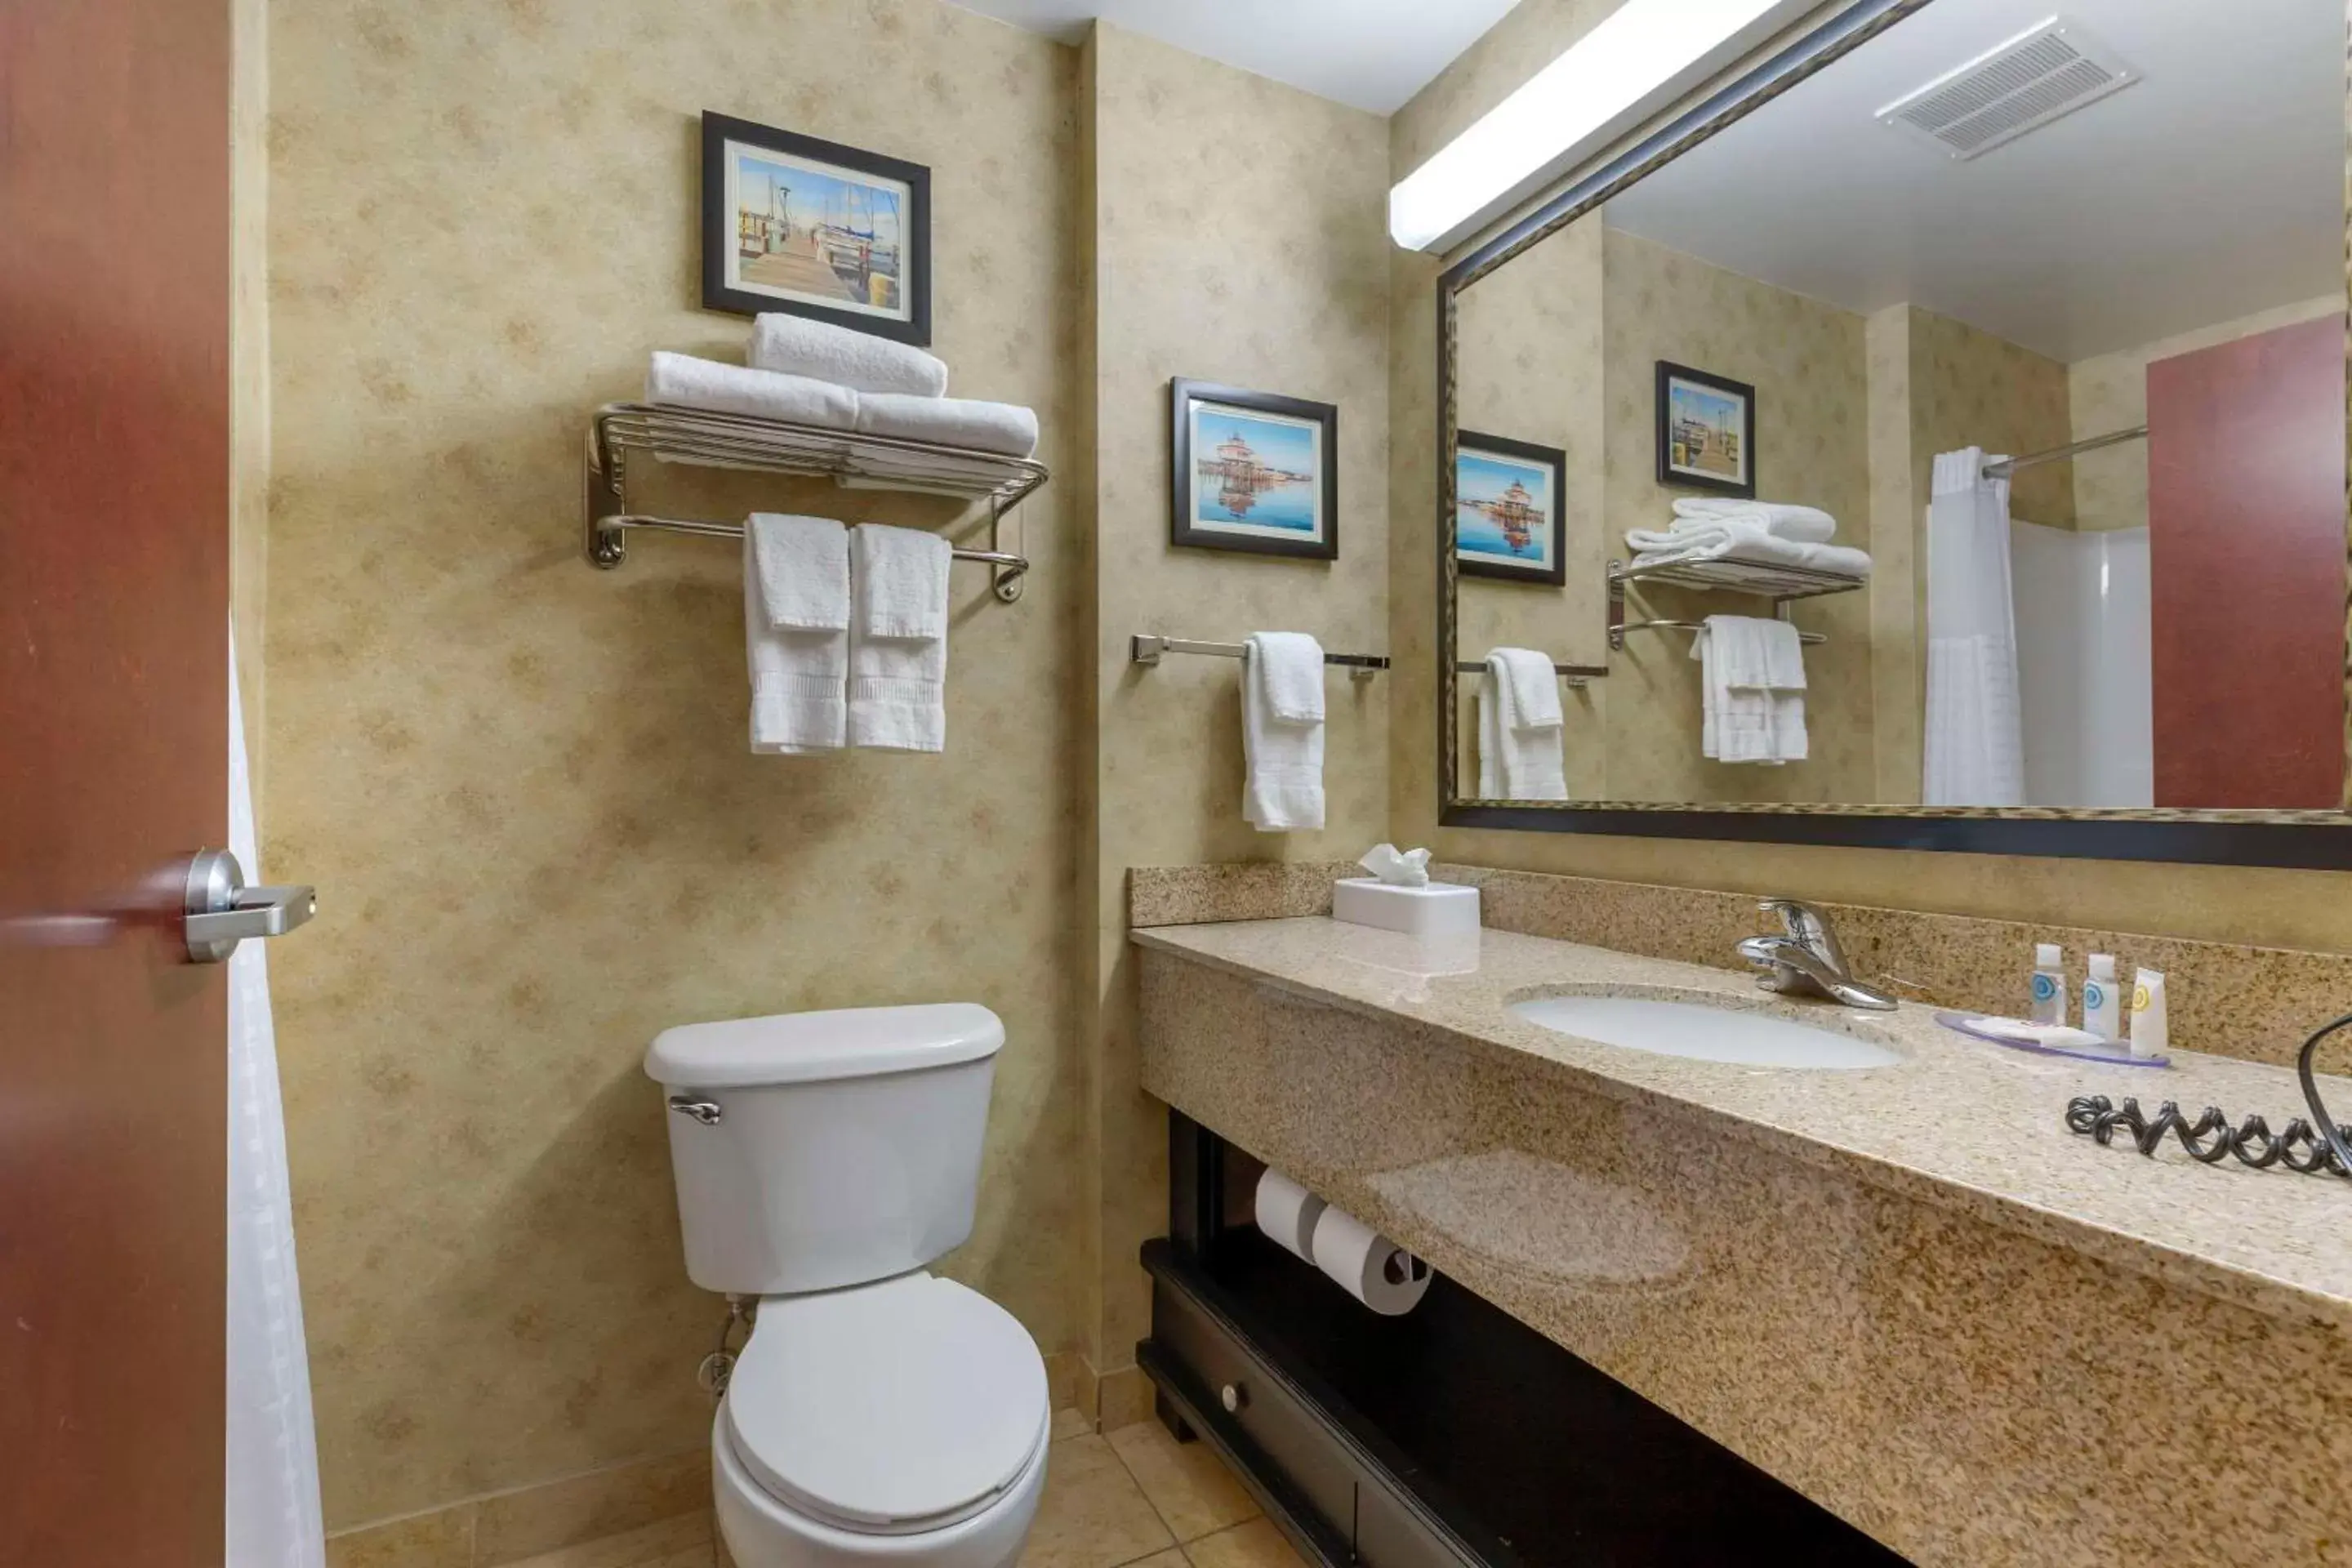 Bedroom, Bathroom in Comfort Inn & Suites Cambridge